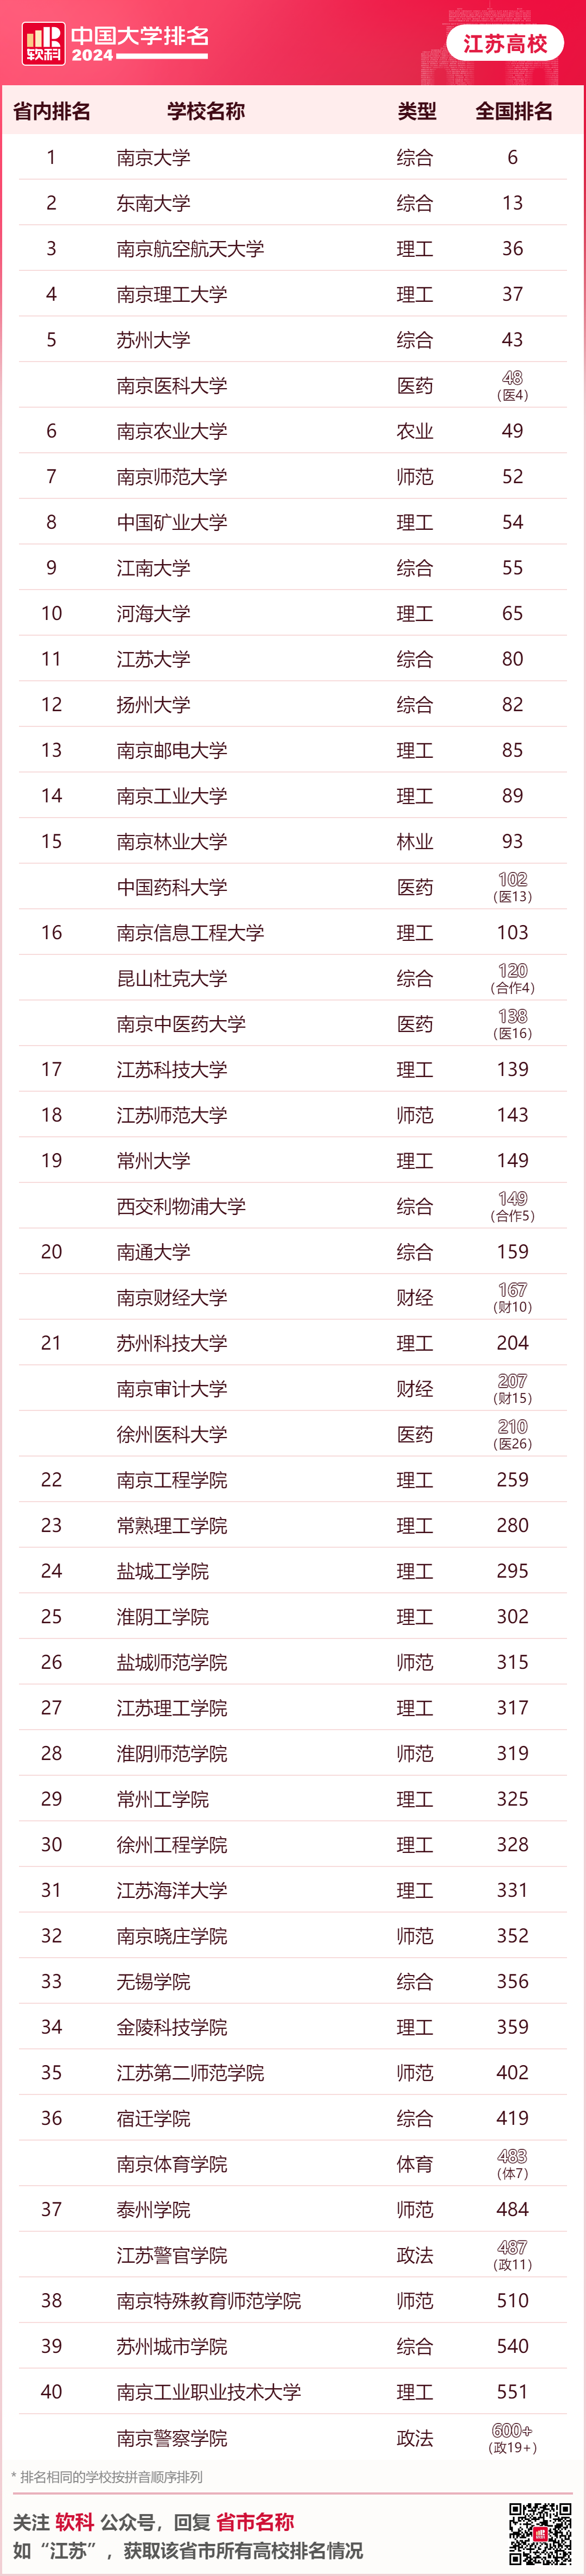 中国大学排名（江苏高校）.png